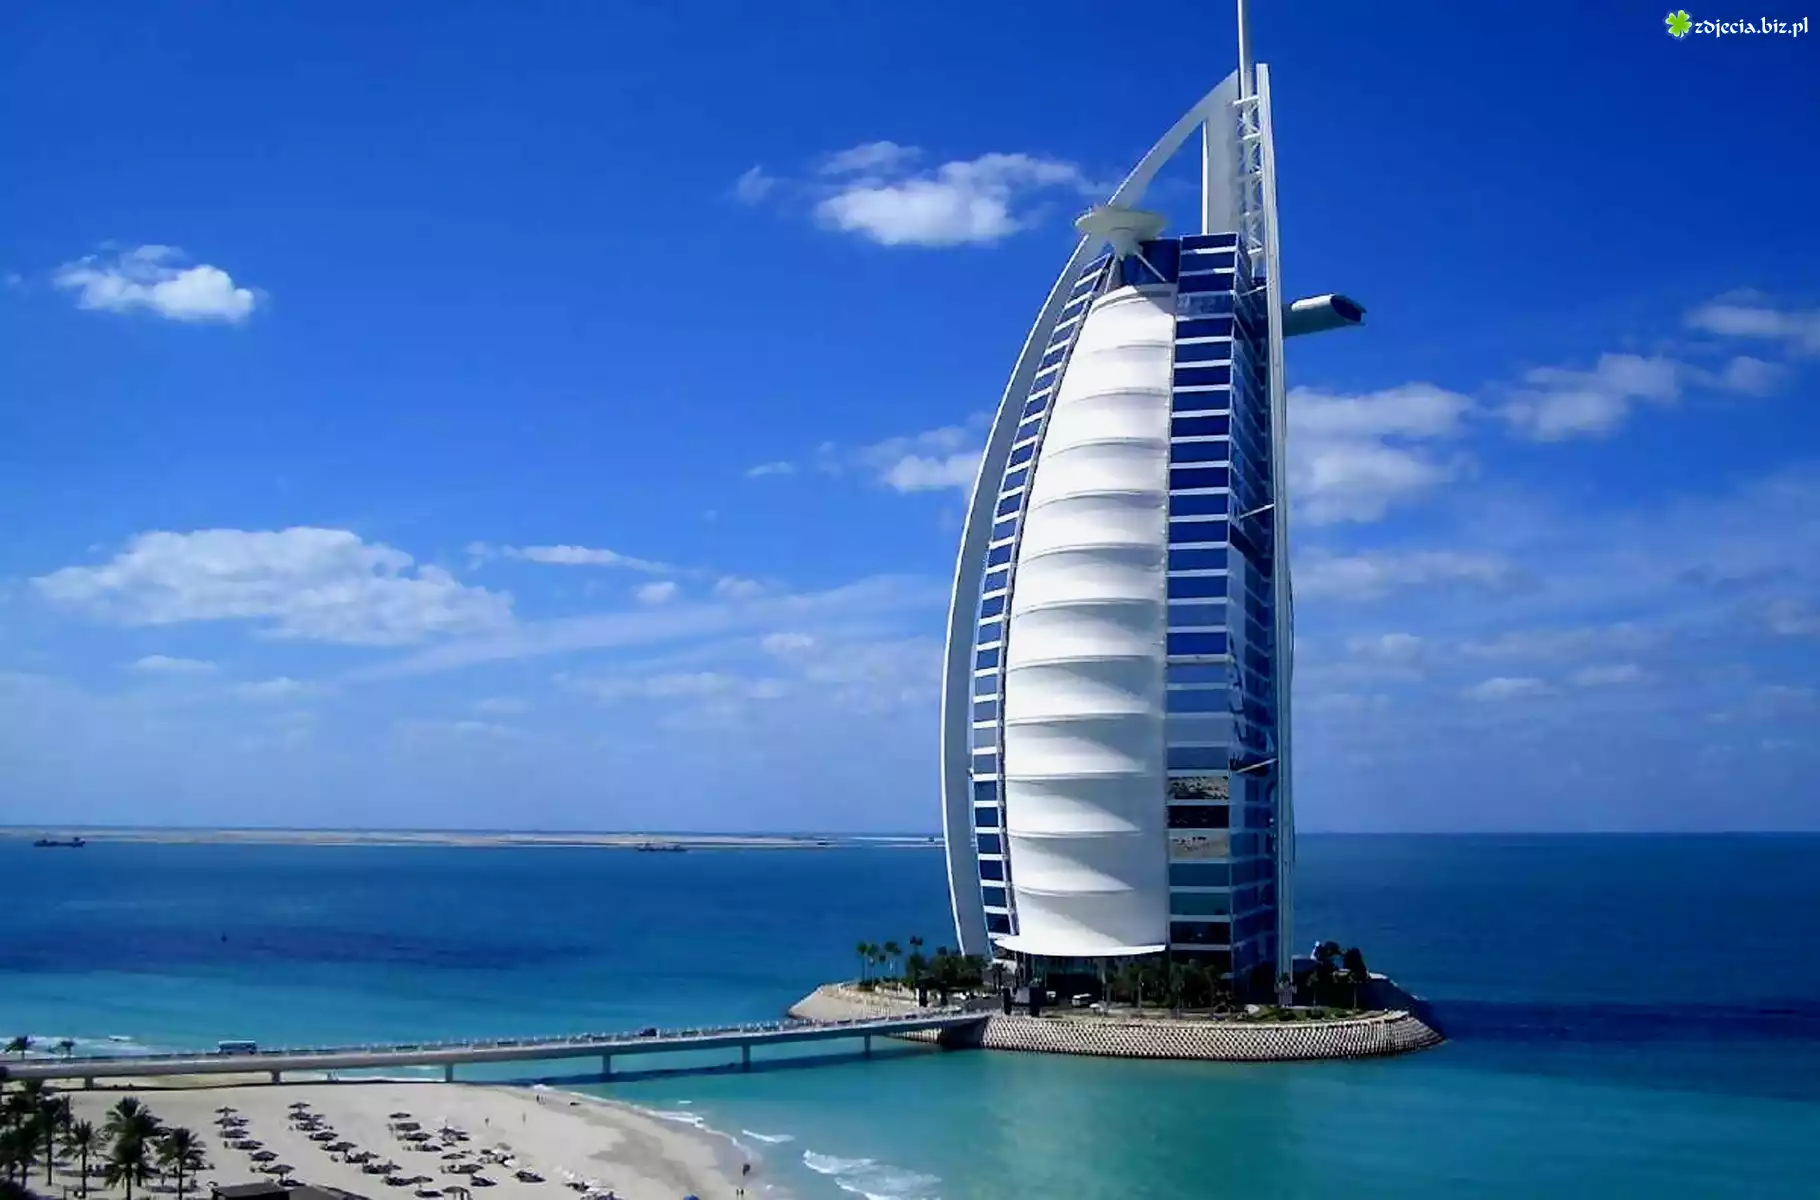 Zjednoczone Emiraty Arabskie, Hotel, Burj Al Arab, Morze, Plaża